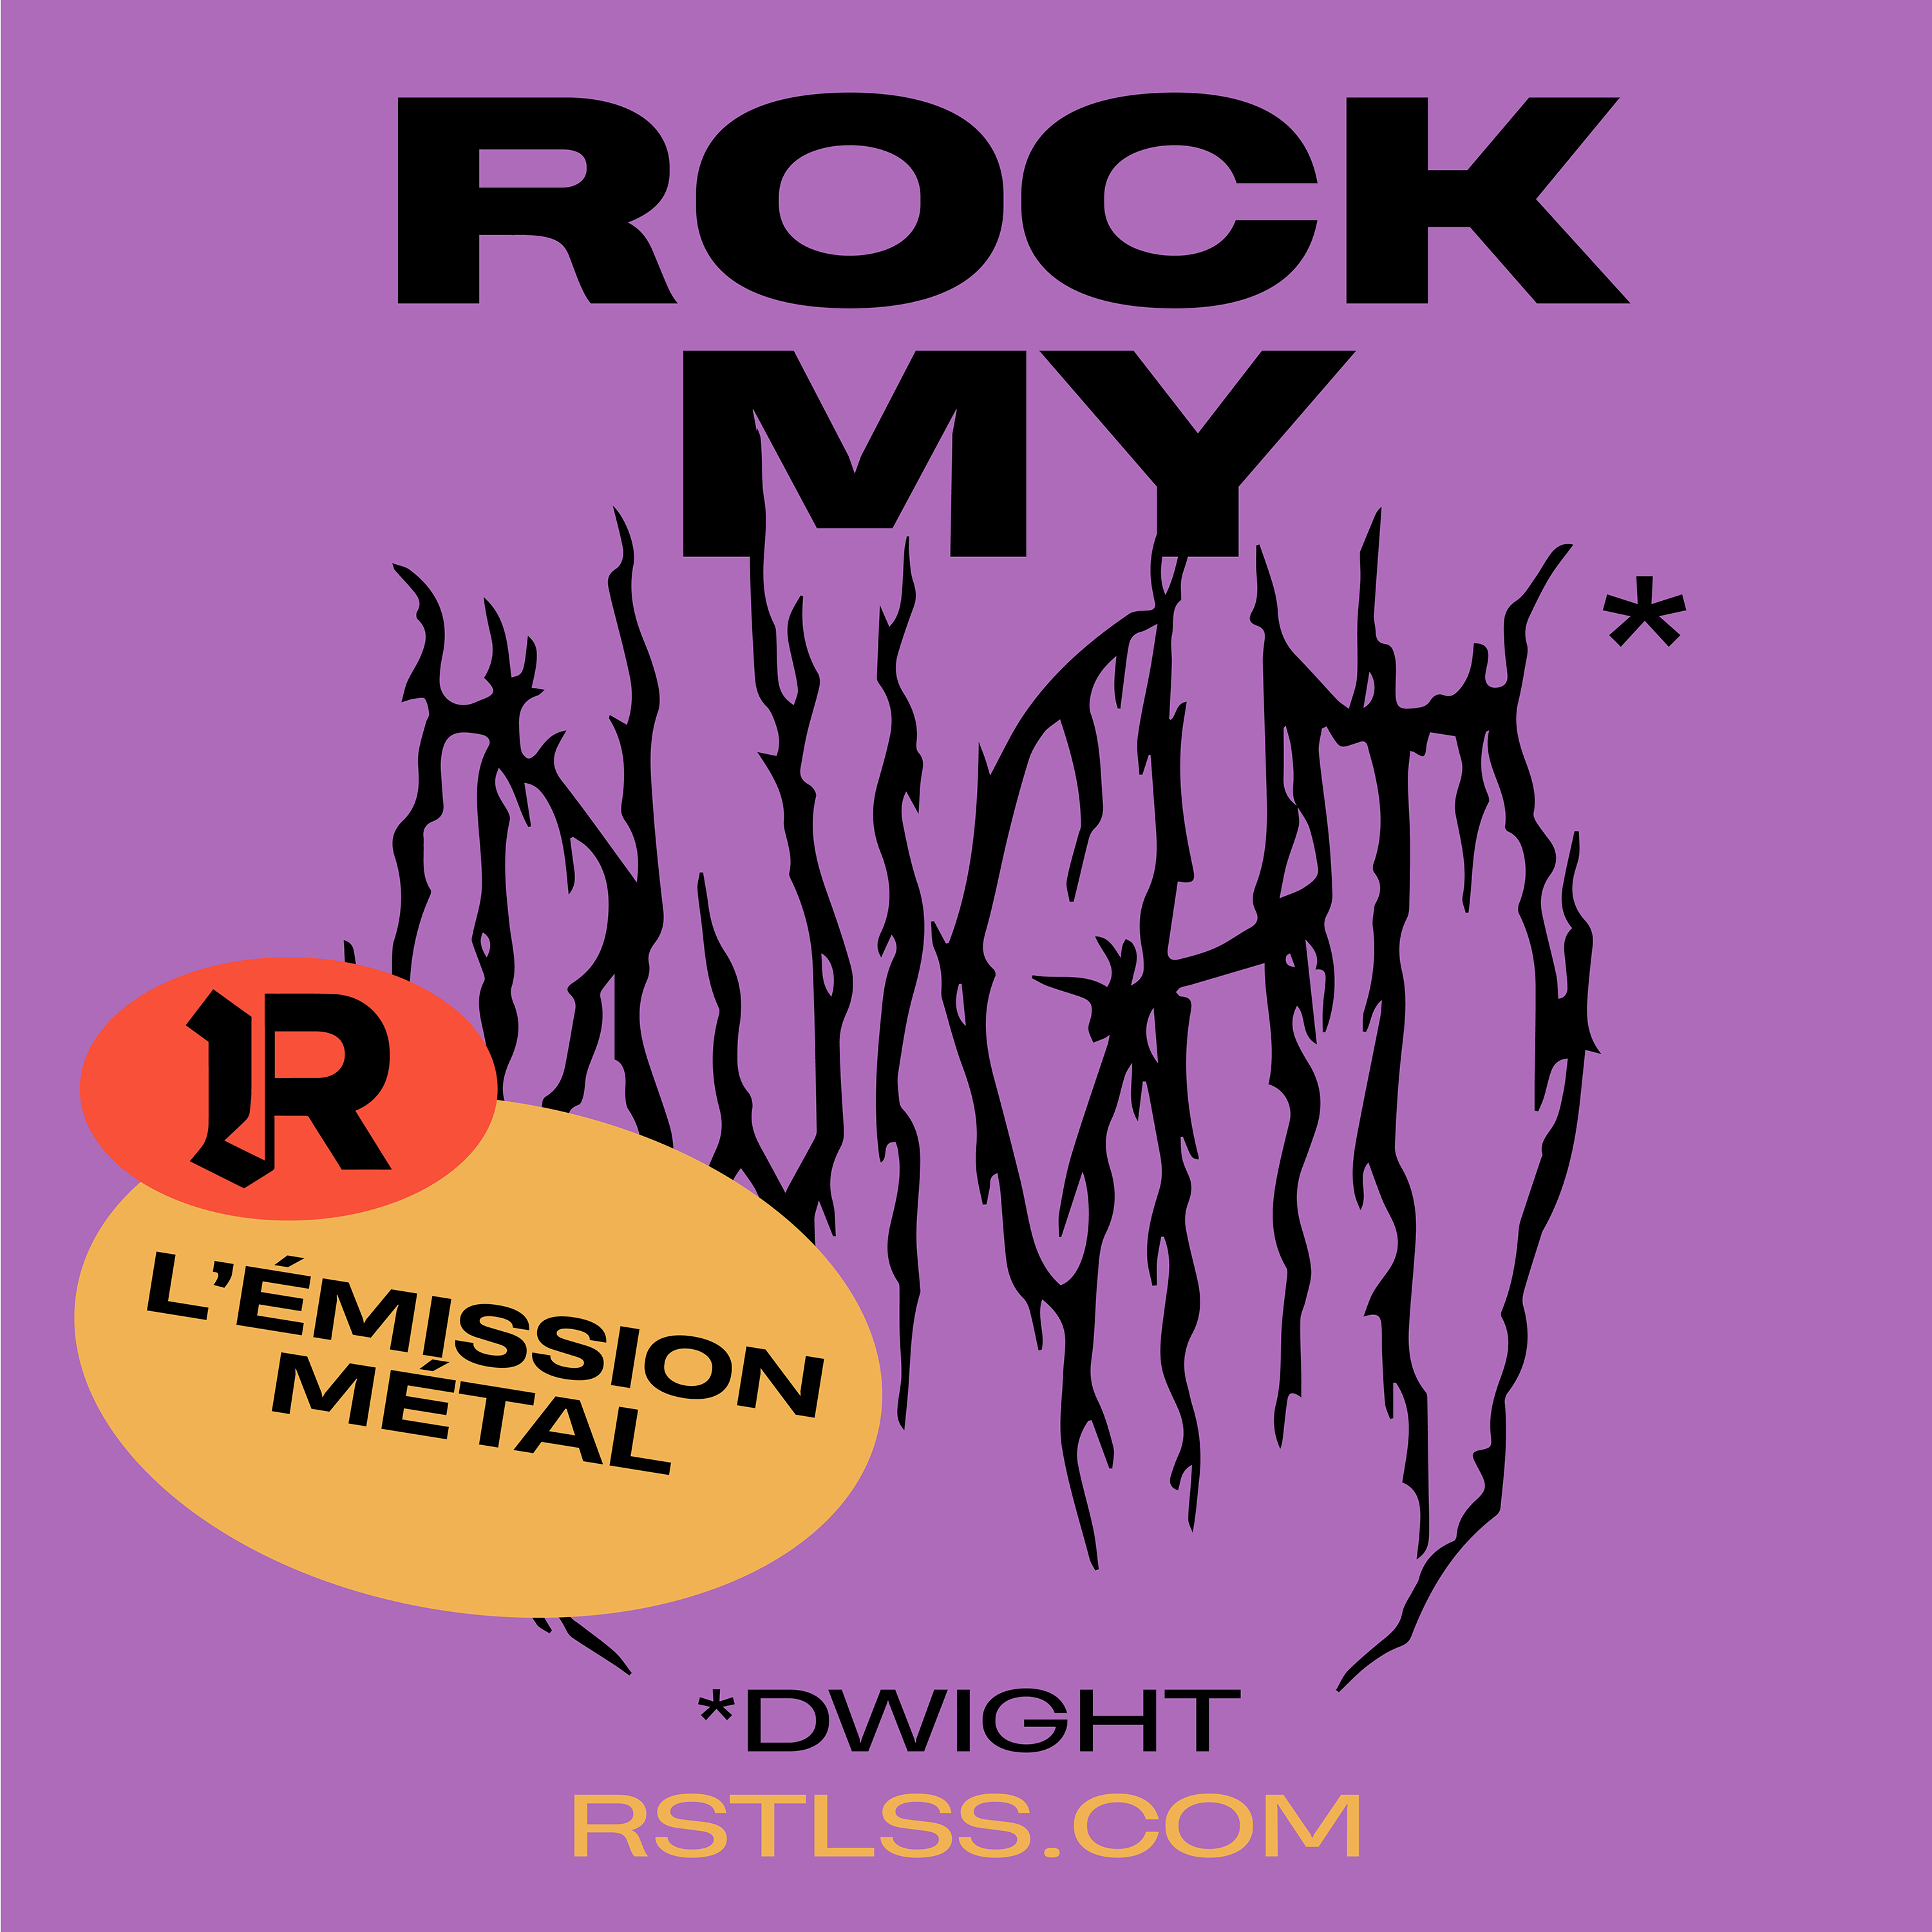 Rock My Dwight / L'émission métal RSTLSS